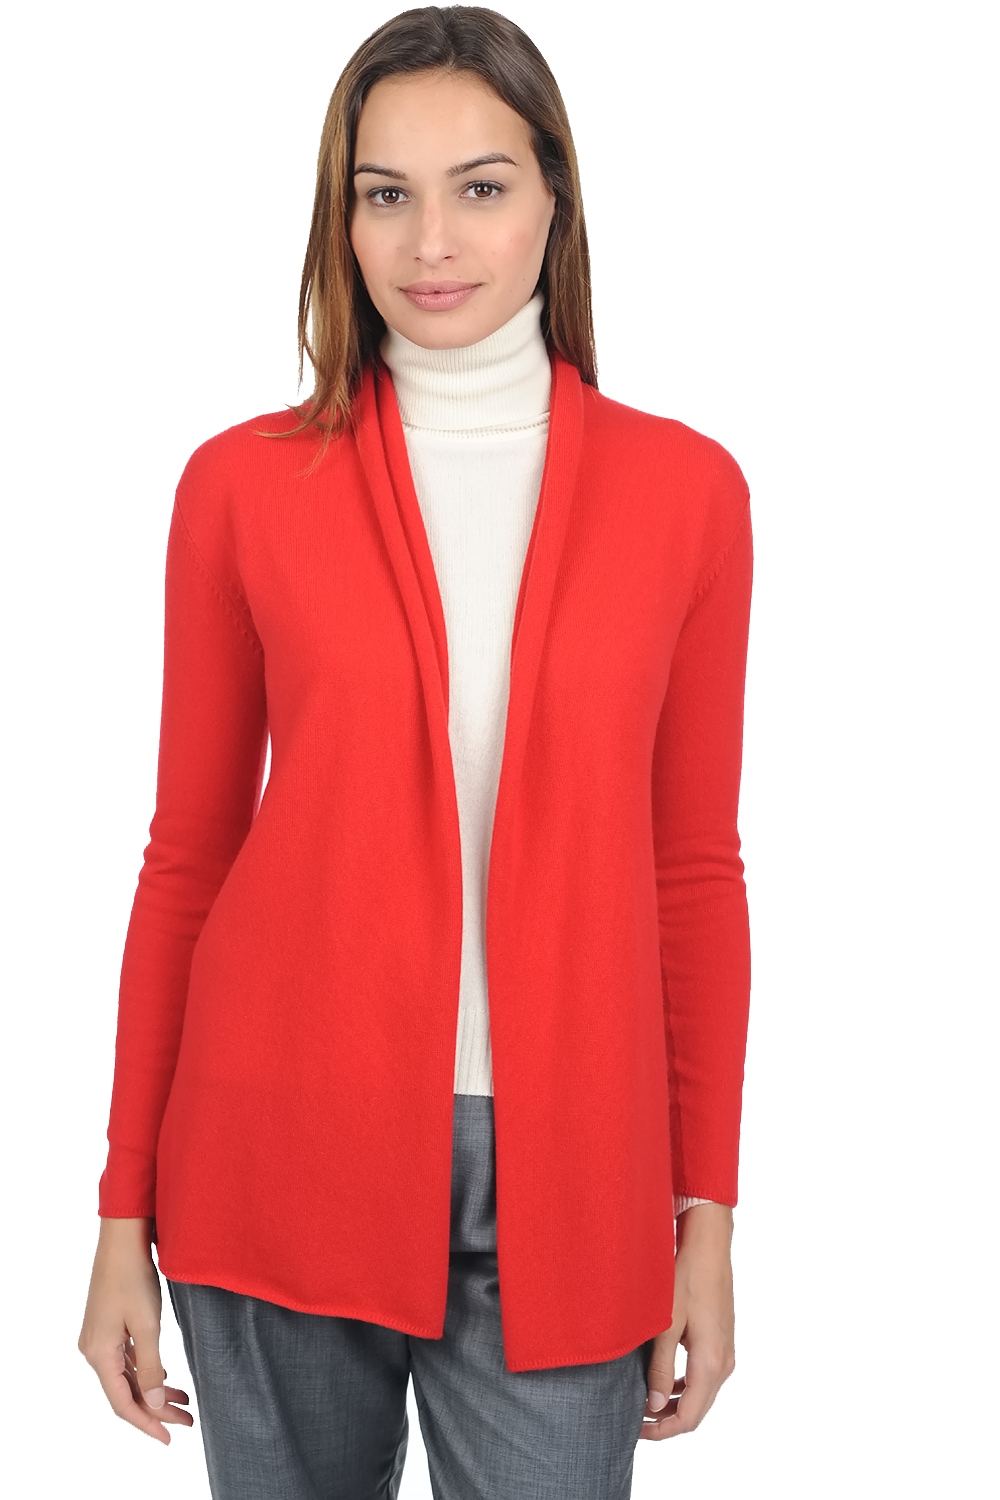 Cashmere ladies premium sweaters pucci premium tango red xl